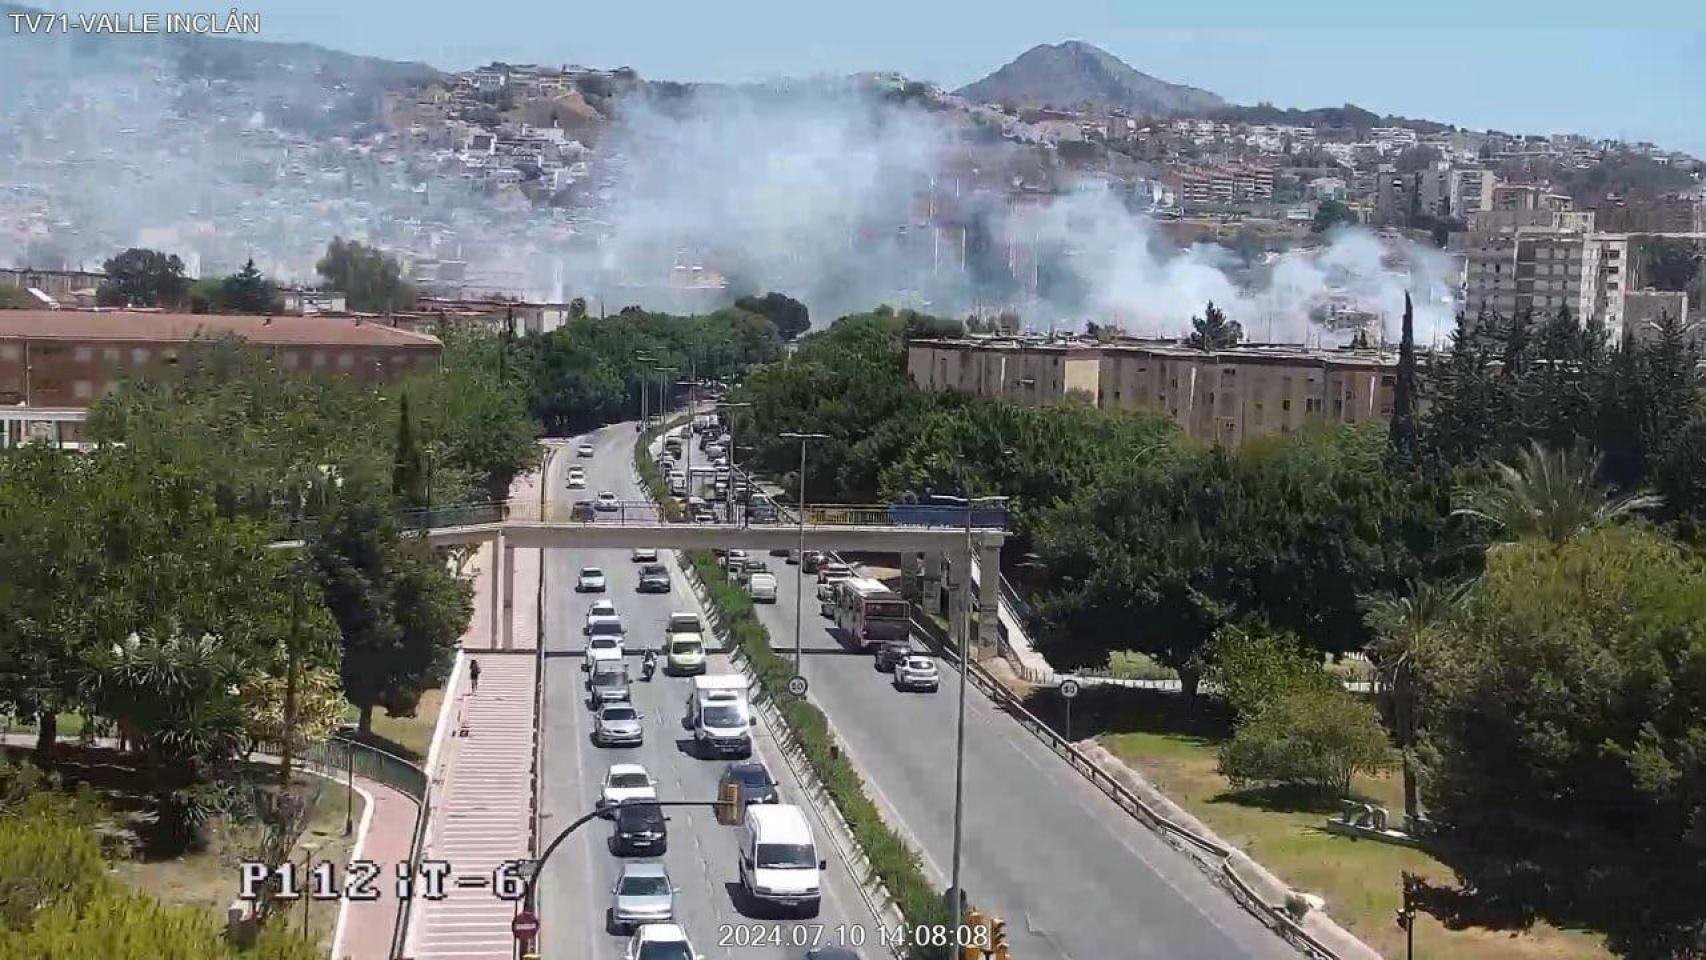 La columna de humo causada por el incendio cerca de La Rosaleda.